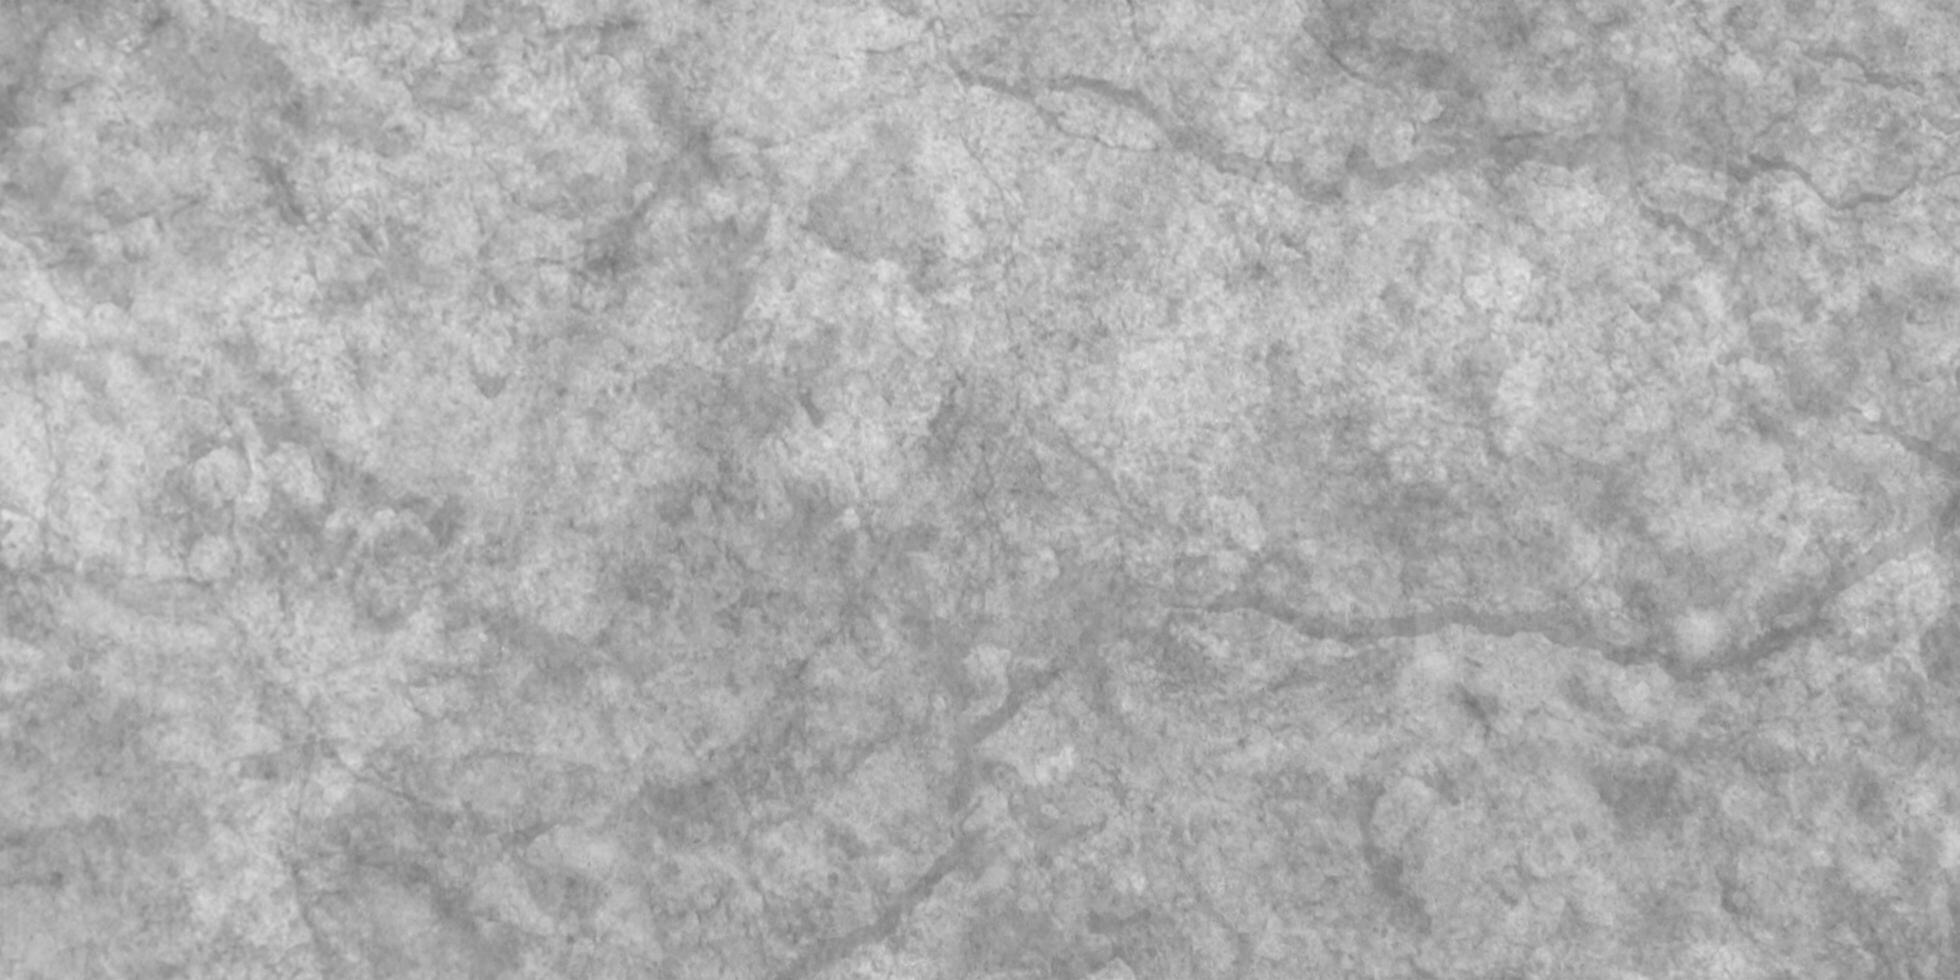 abstrakt grå nyanser grunge textur, polerad marmor textur perfekt för vägg och badrum dekoration, sömlös tömma slät polerad retro mönster vit marmor textur abstrakt bakgrund, foto